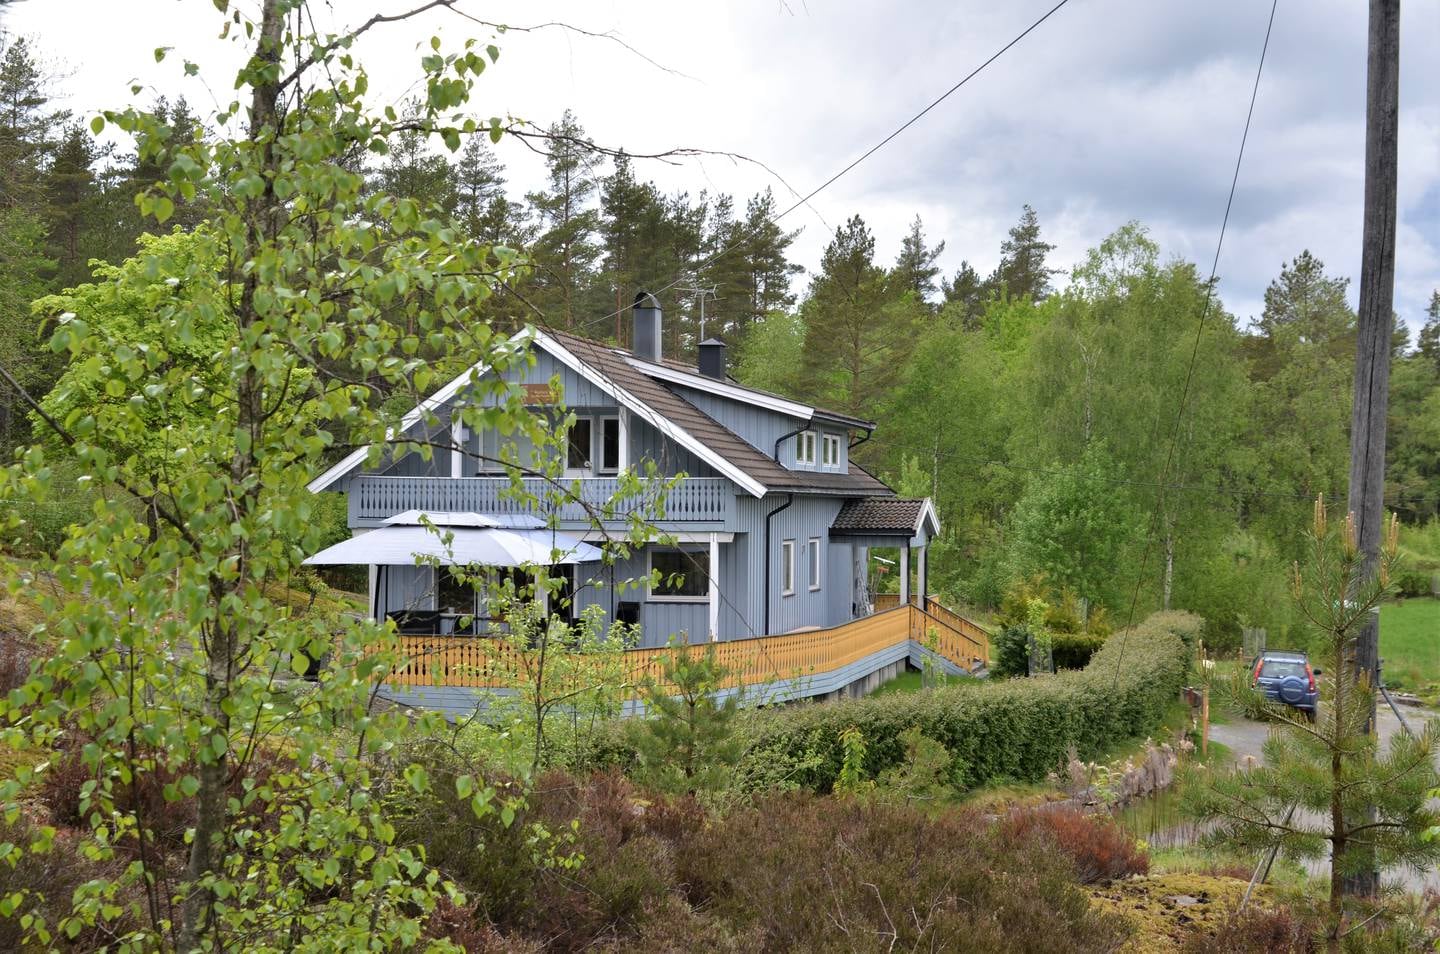 I underkant av en times kjøring fra Oslo ligger klosteret Lokuttara Vihara. Stiftelsen Skogskloster kjøpte gården i 2015, og etablerte Skiptvet buddhistiske skogskloster.